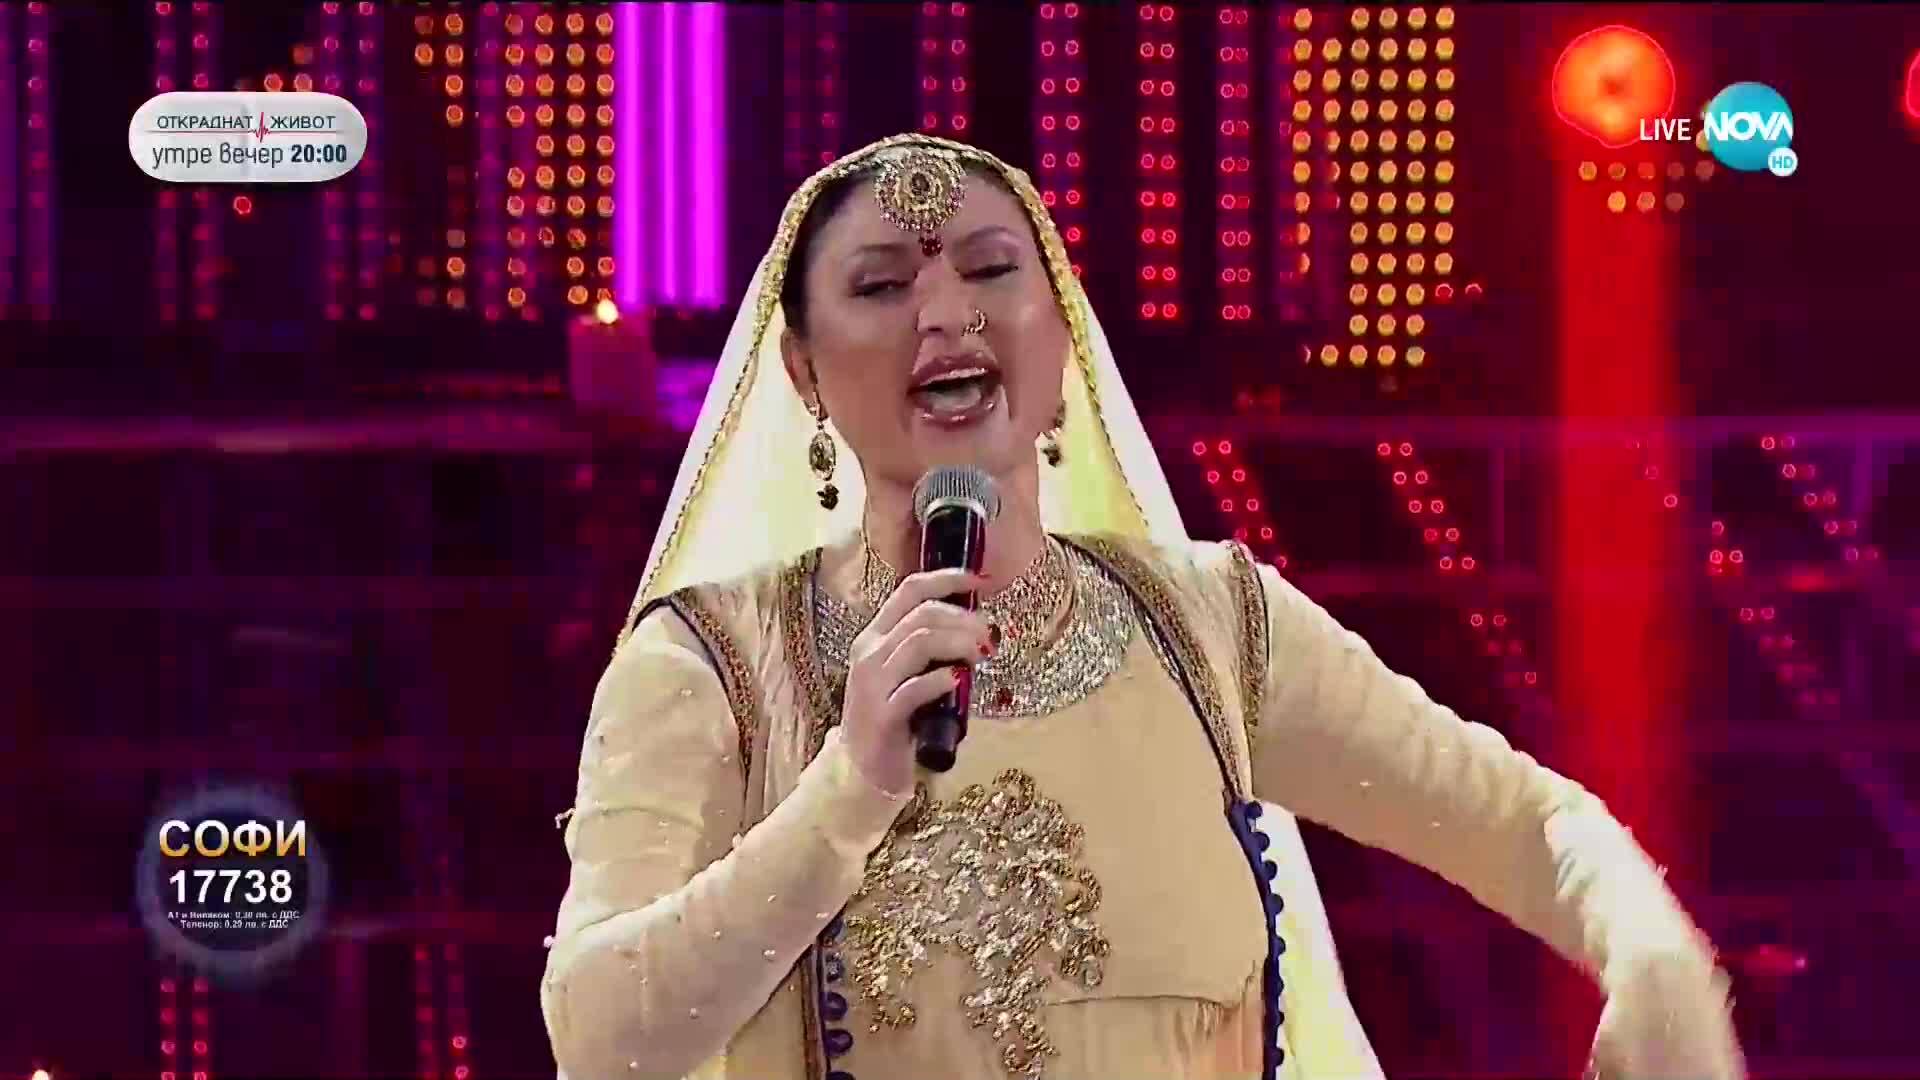 Софи Маринова като Aishwarya Rai - „Salaam” | Като две капки вода